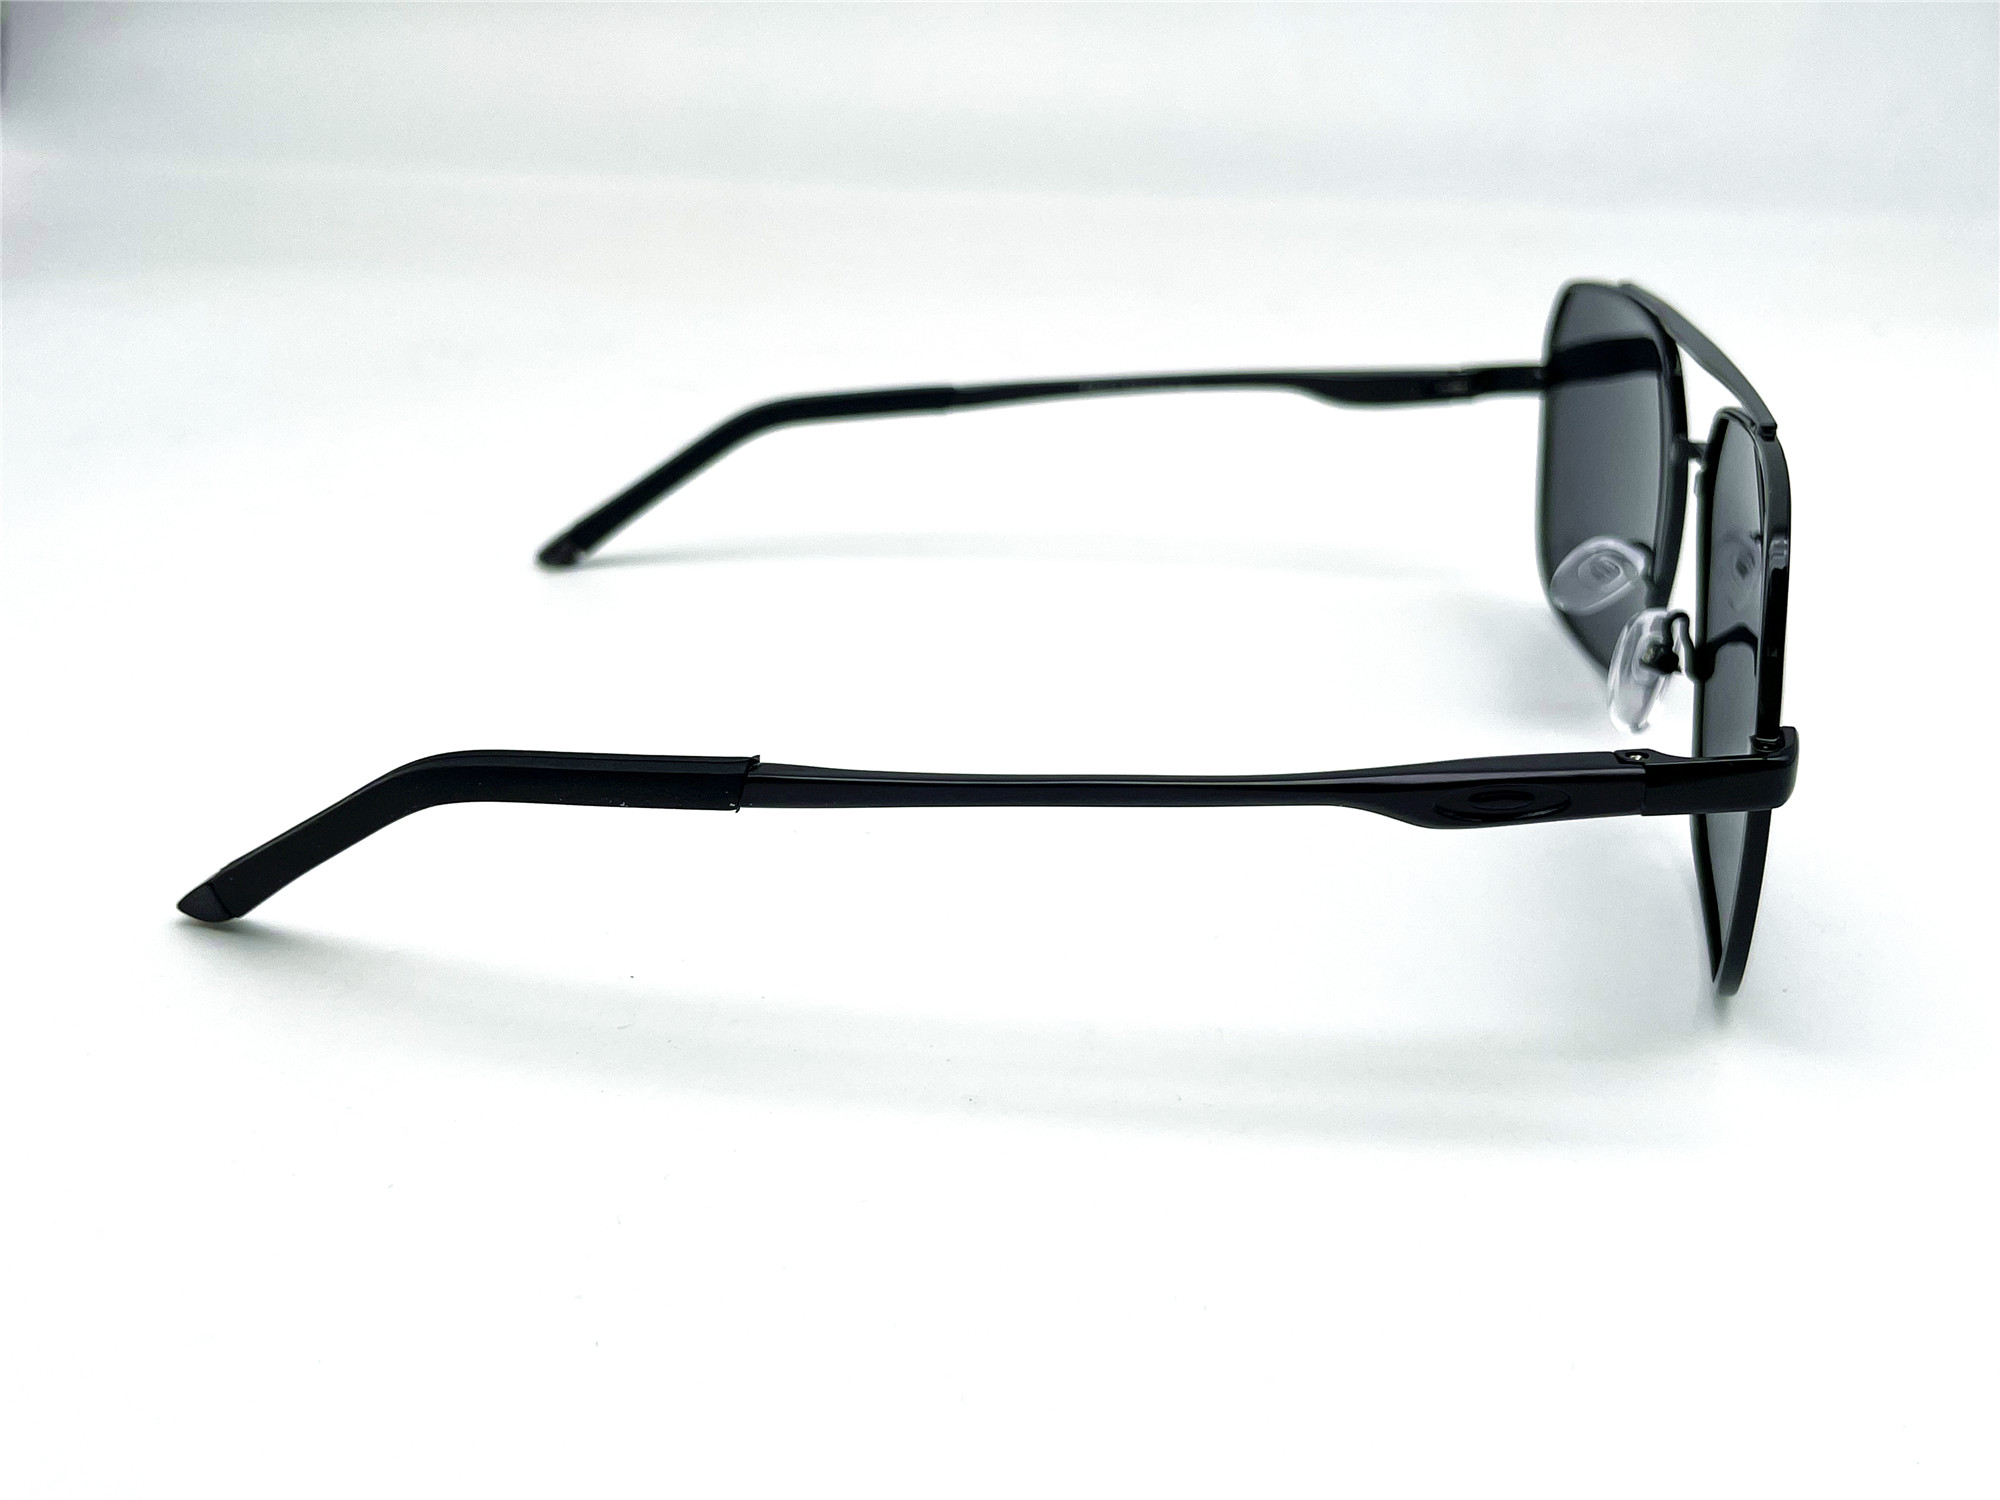  Солнцезащитные очки картинка Мужские Caipai Polarized Квадратные P4003-С1 